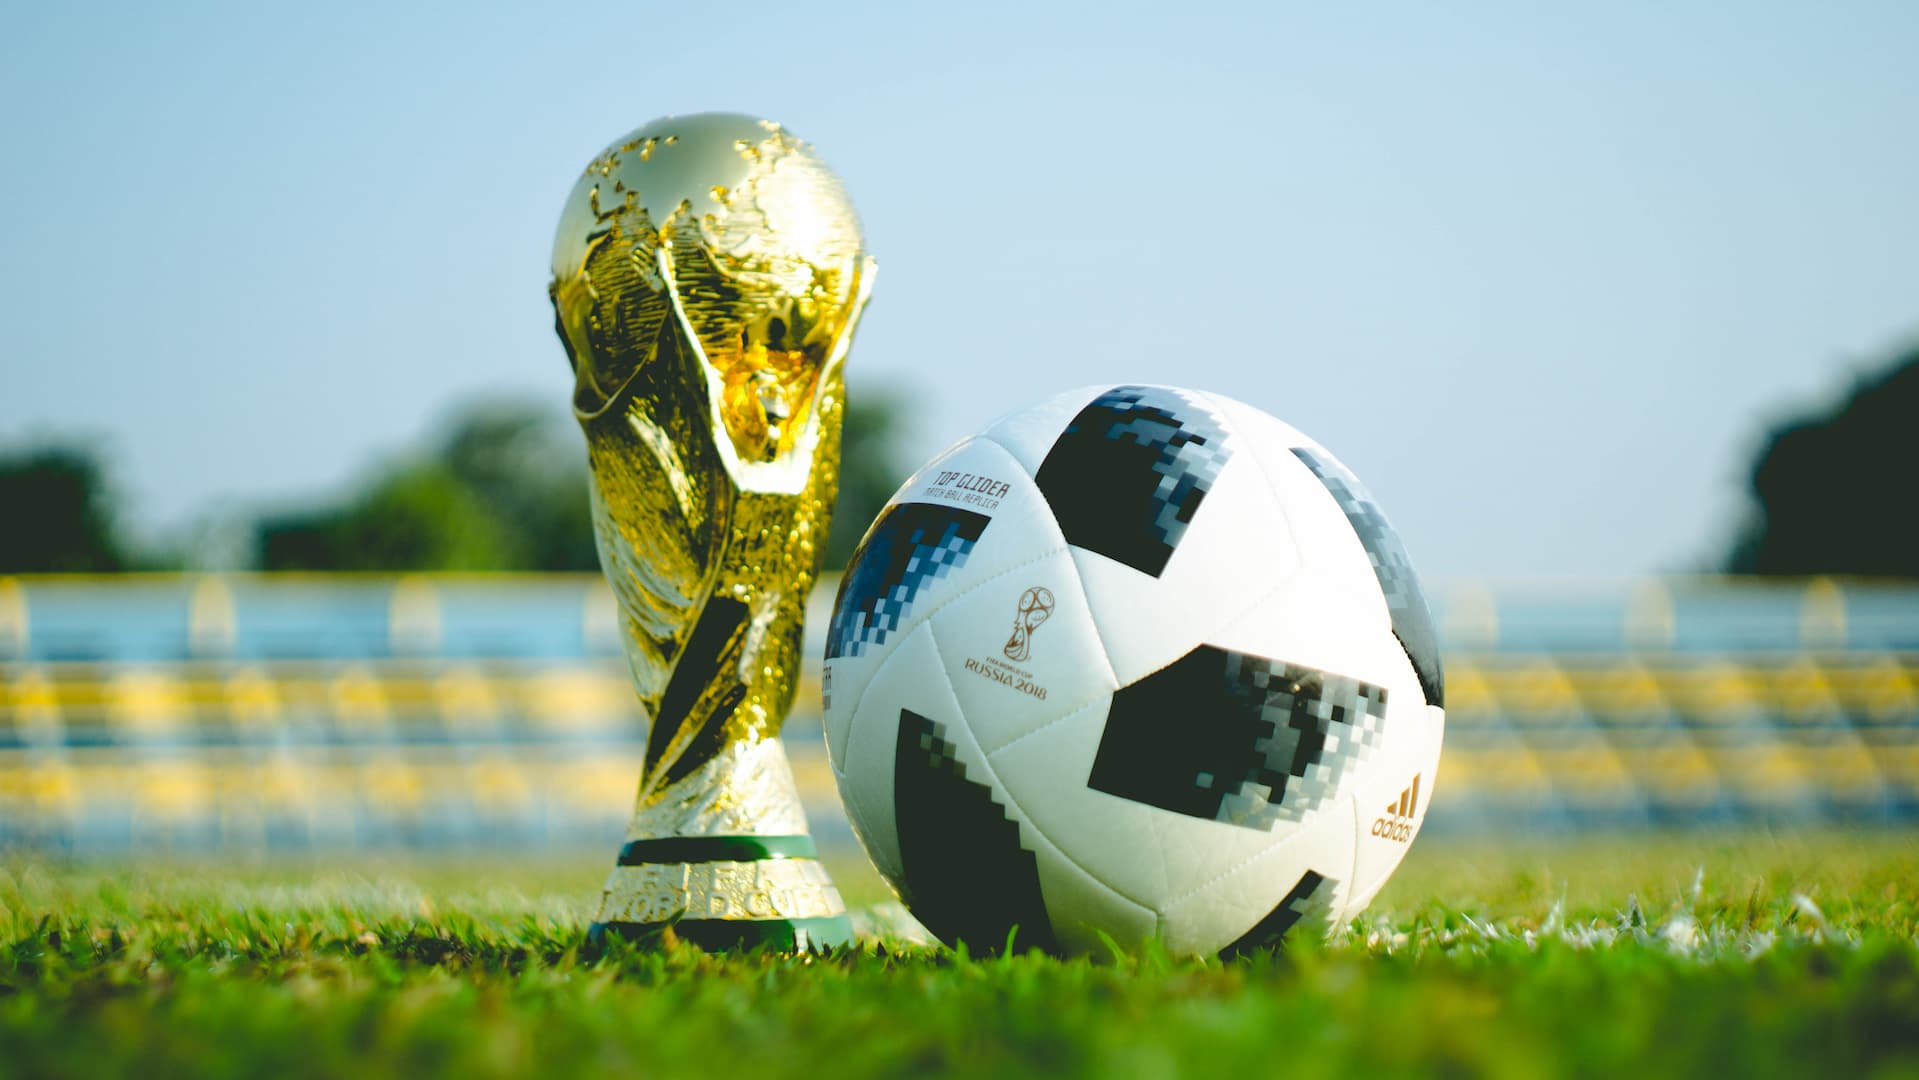 Especial Copa do Mundo - Vocabulário de futebol em inglês